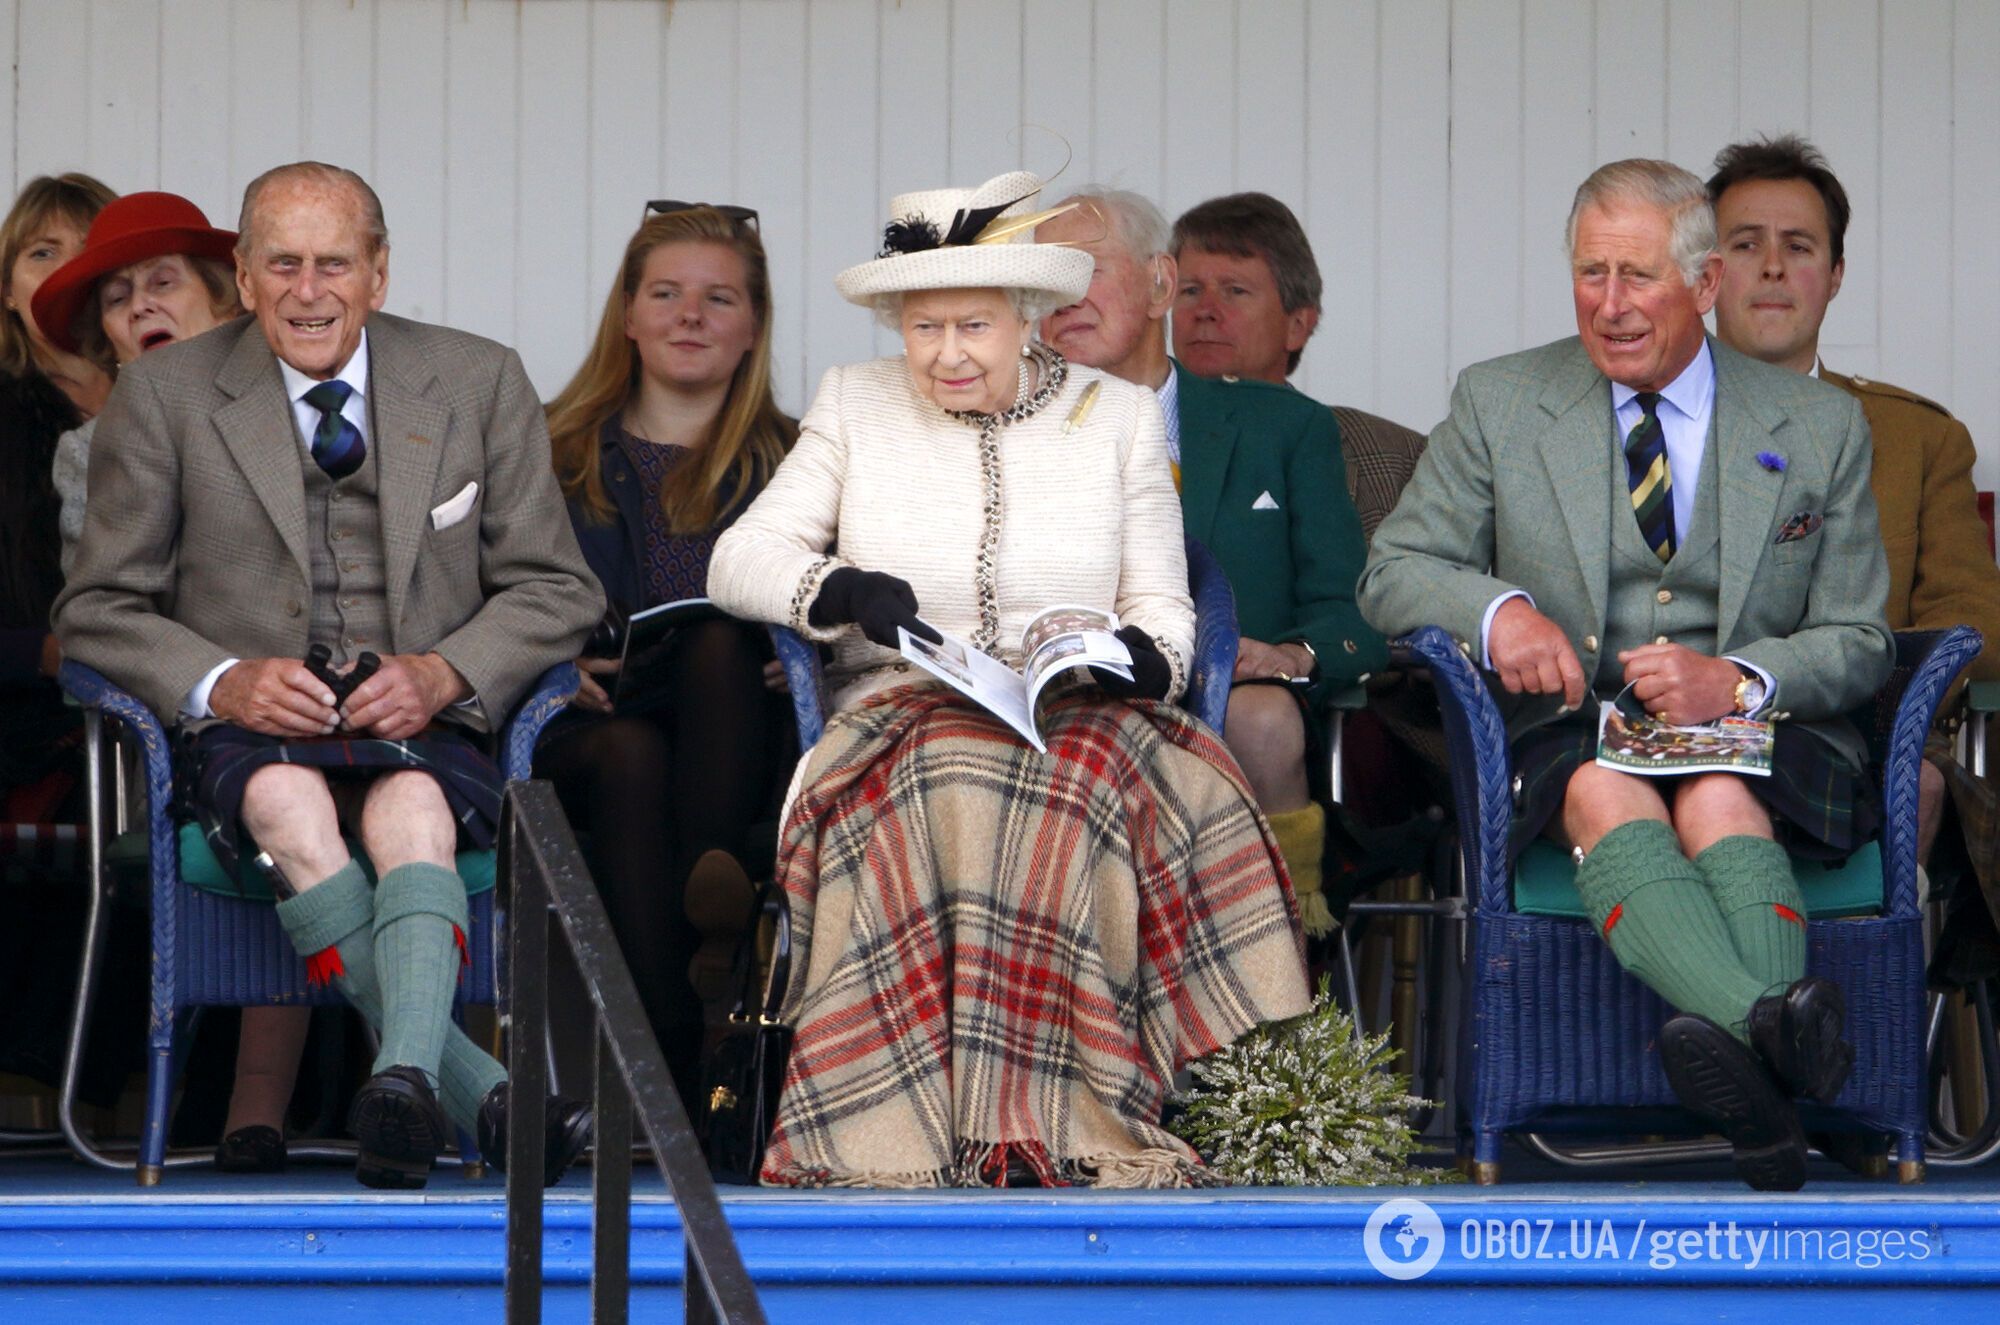 "Британський шарм" чи провал у виборі одягу? 5 конфузів королівських осіб. Фото